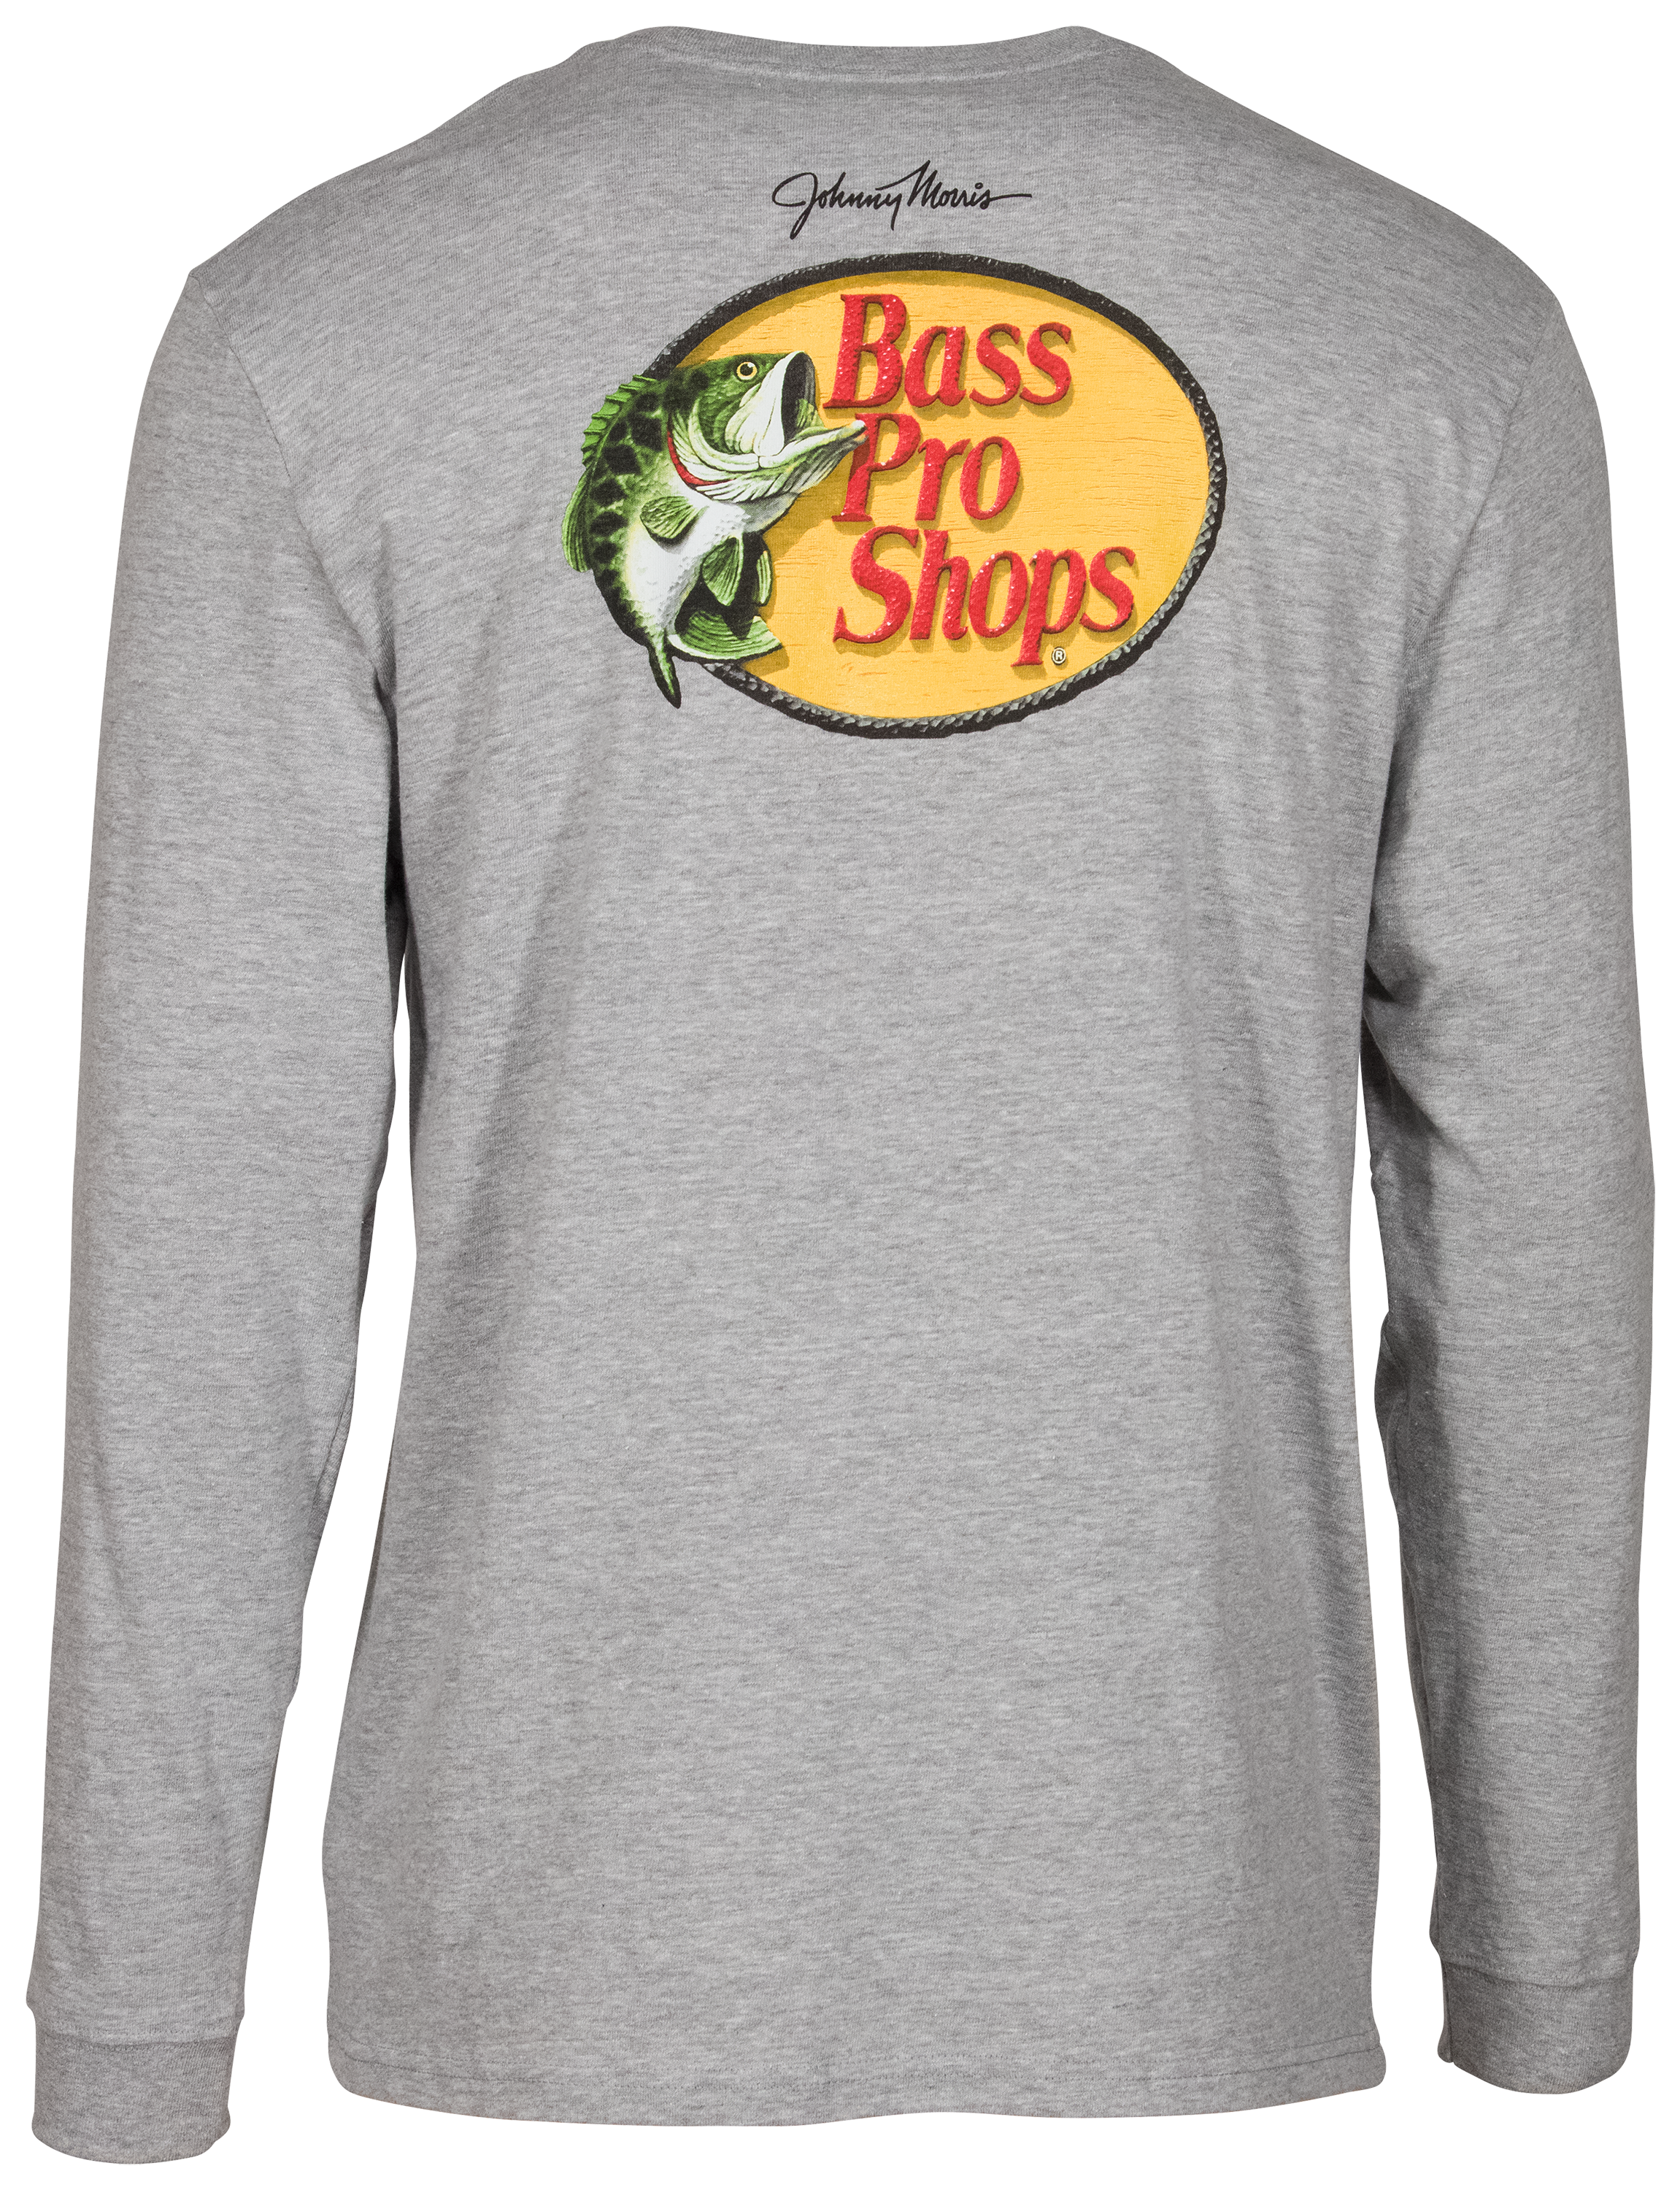 Bass Pro Shops Woodcut Long-Sleeve T-Shirt for Men - Moss Heather - 2XL